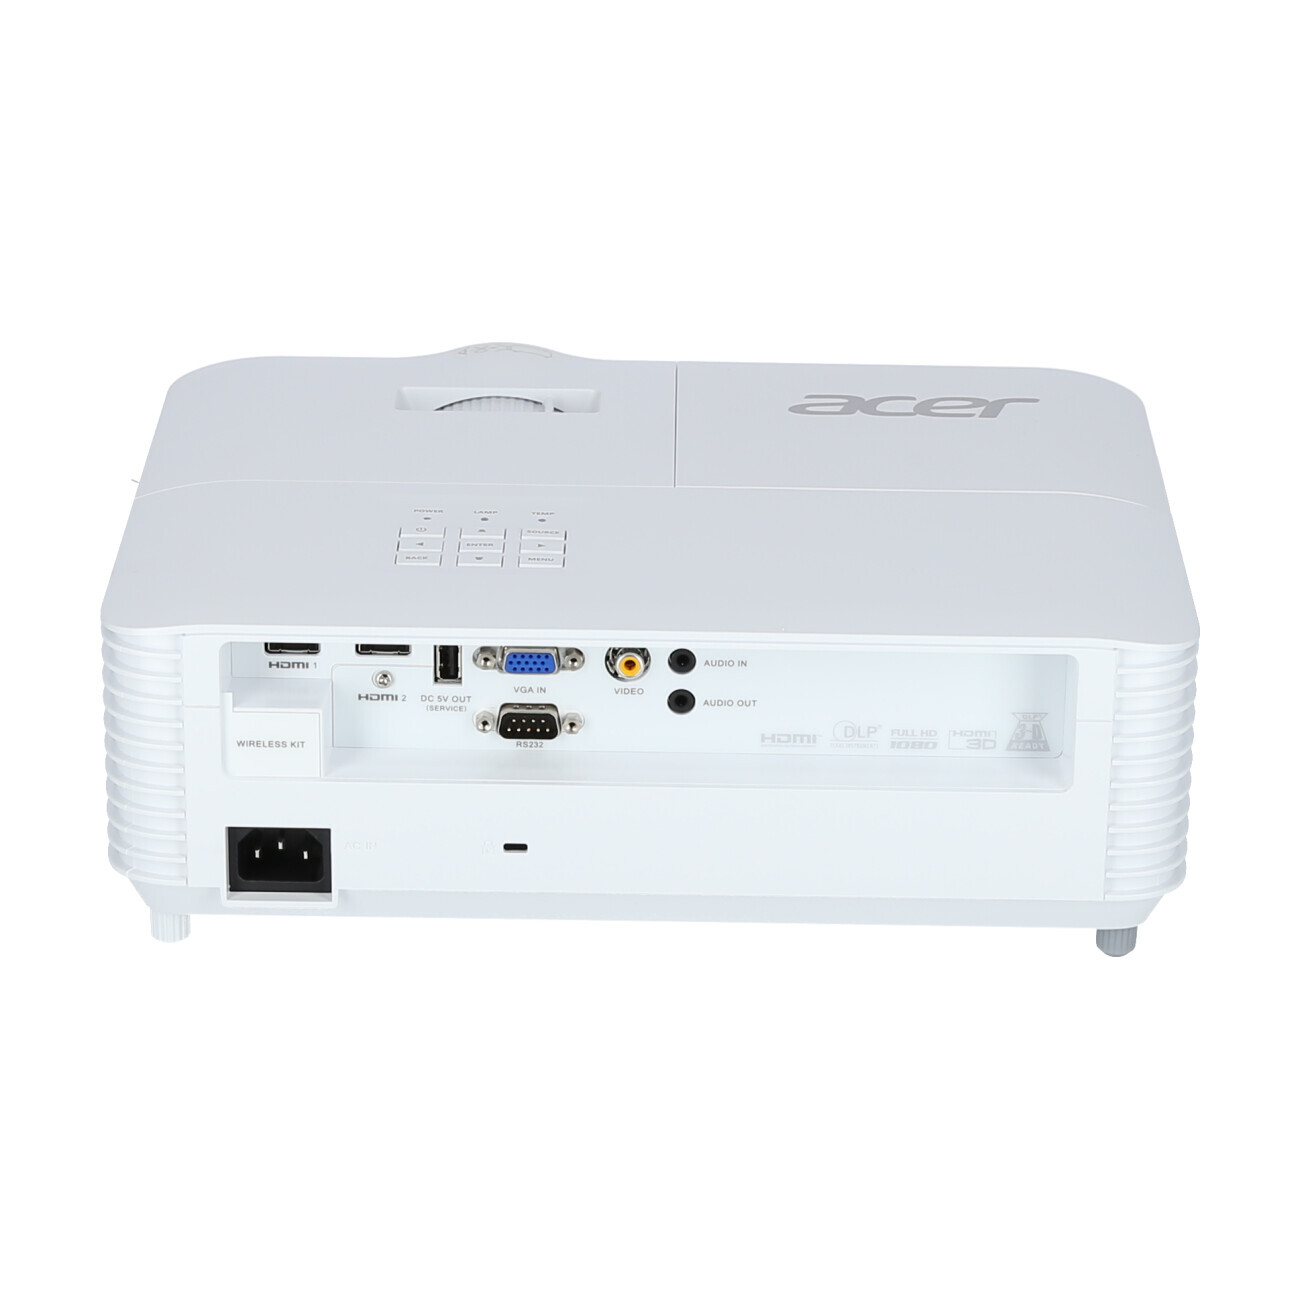 Vorschau: Acer H6518STi Kurzdistanzbeamer mit 3500 ANSI-Lumen und Full-HD Auflösung